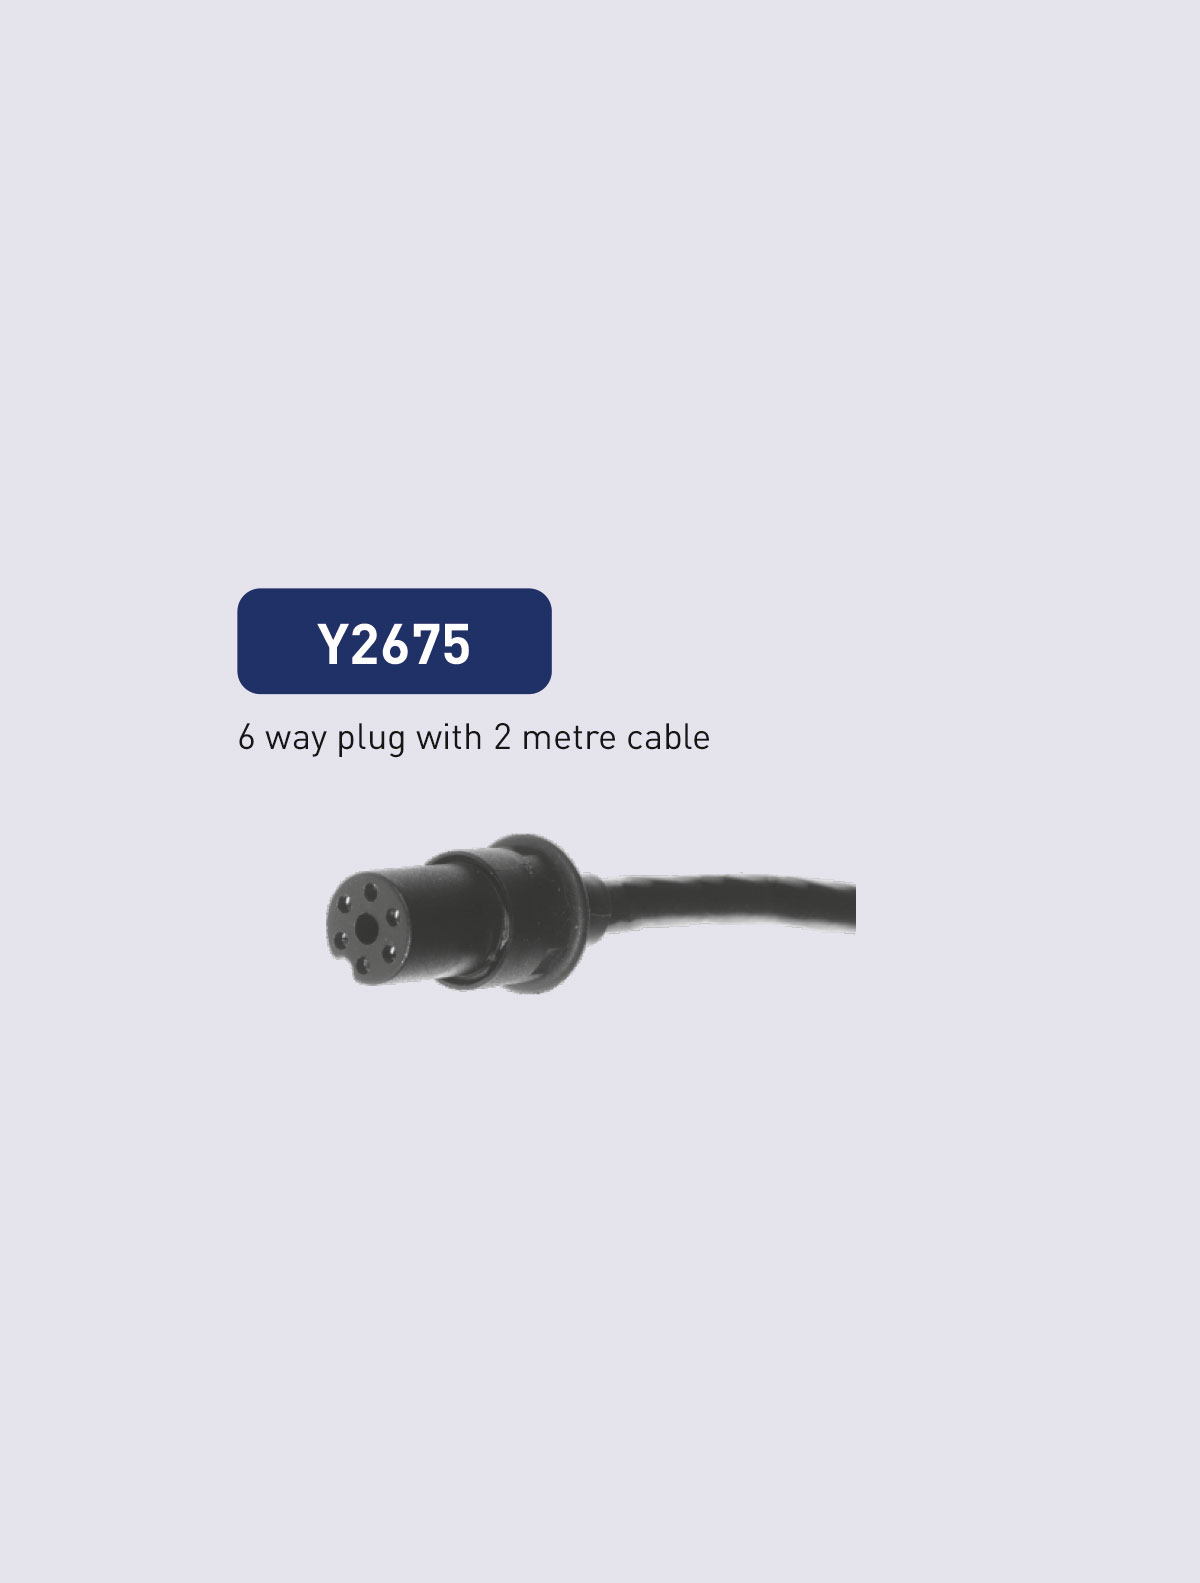 Y2675 cable